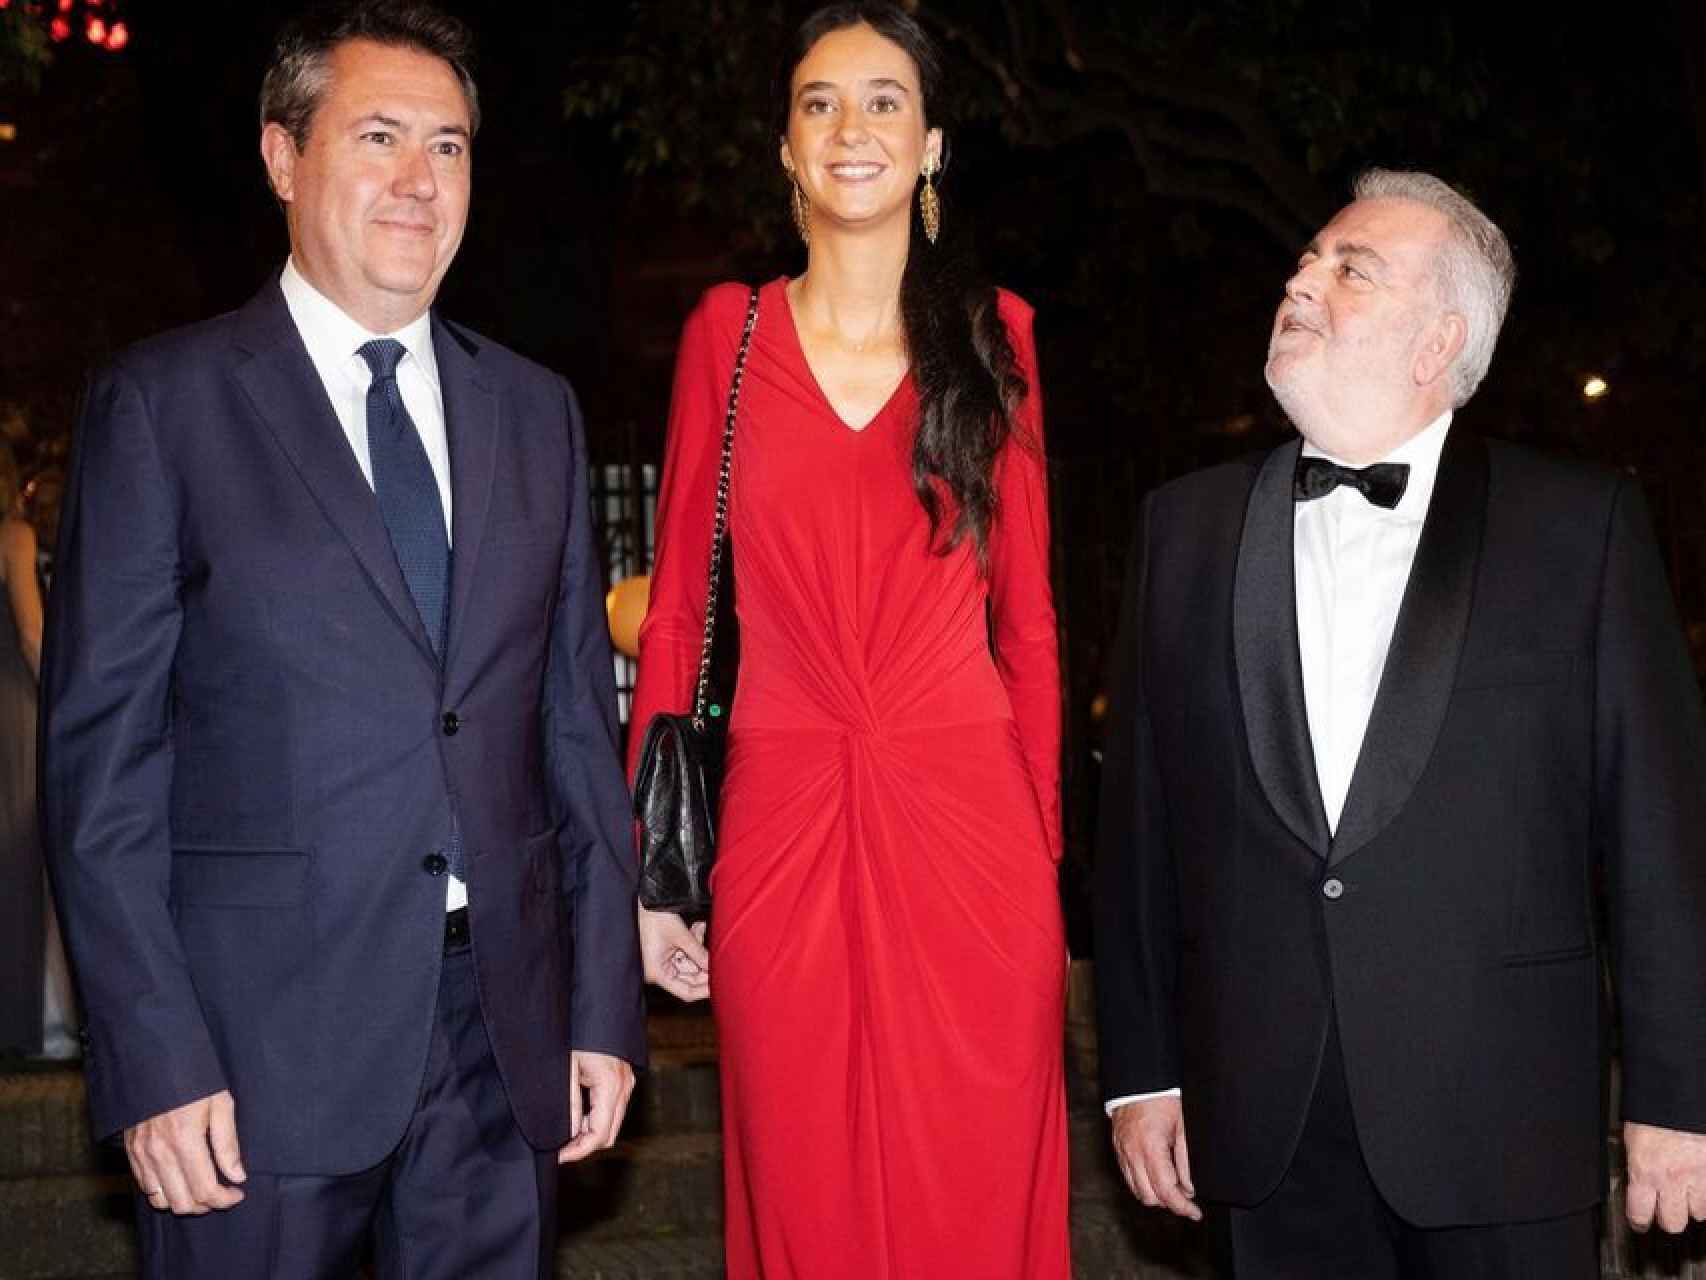 Victoria Federica con su bolso 2.55 de Chanel. A su izquierda el alcalde de Sevilla, Juan Espadas, y a su derecha el presidente del Real Club de Enganches de Andalucía, Jesús Contreras Ramos.